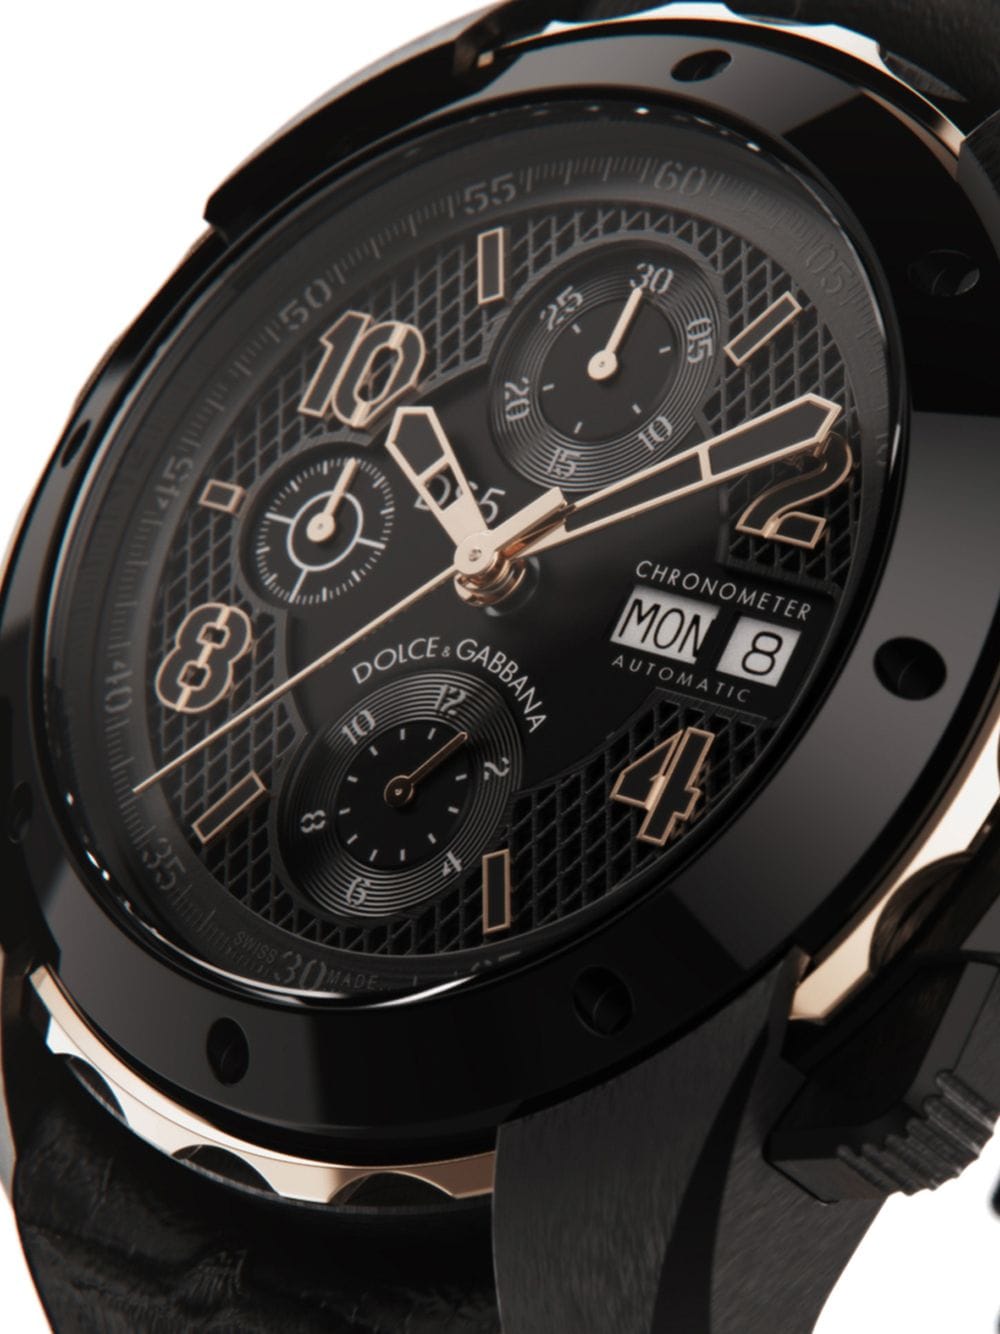 Dolce & Gabbana DS5 horloge - Zwart